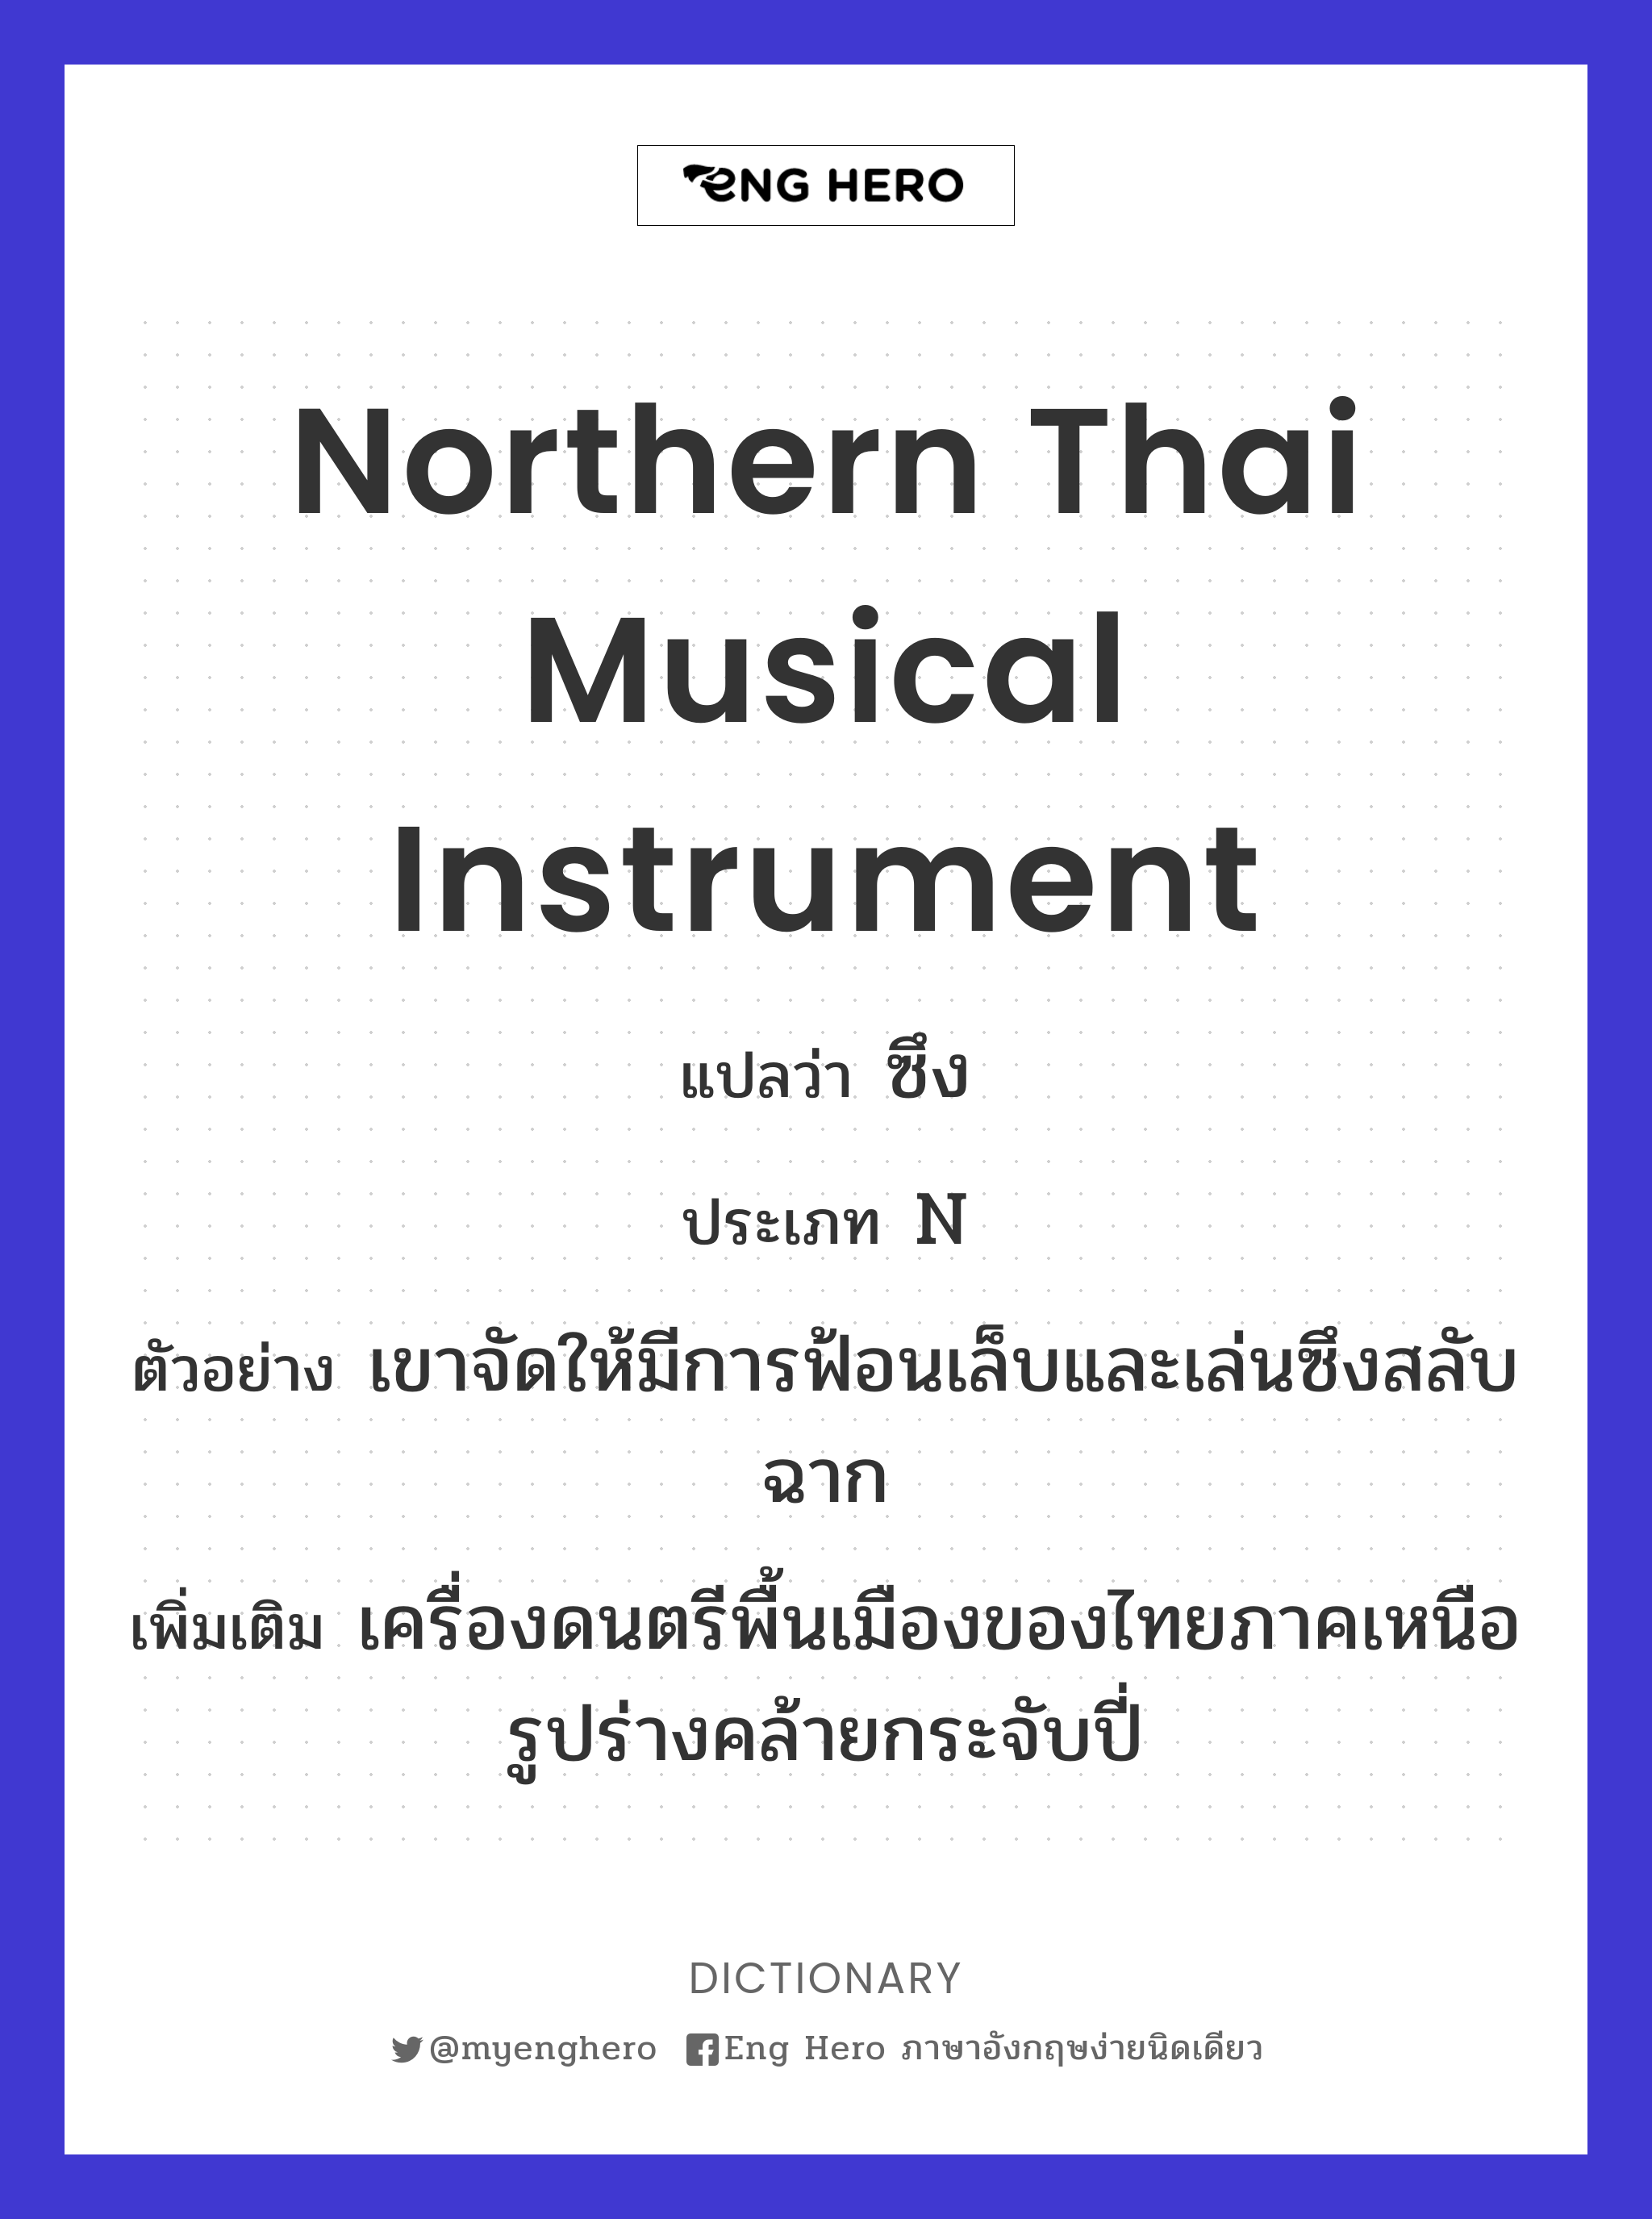 northern Thai musical instrument